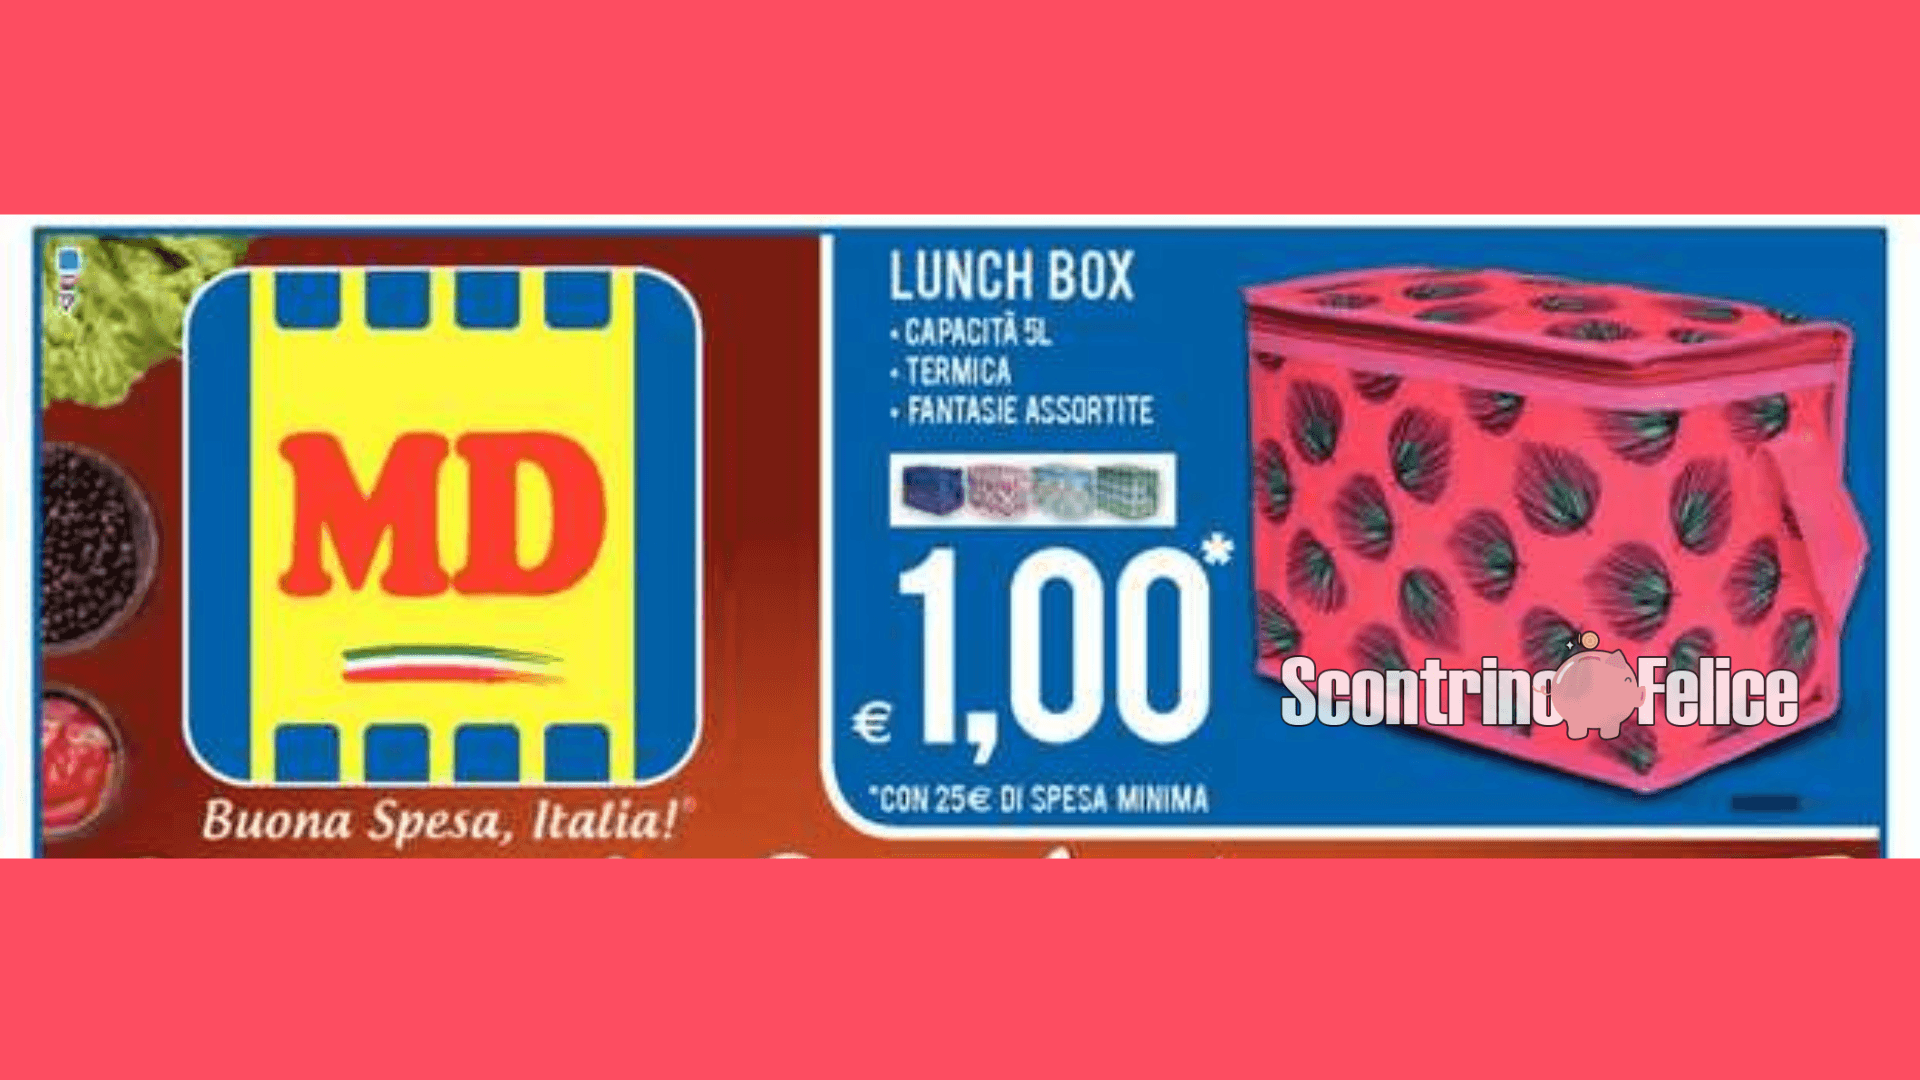 Lunch box a solo 1 euro da MD: scopri come averla! 9